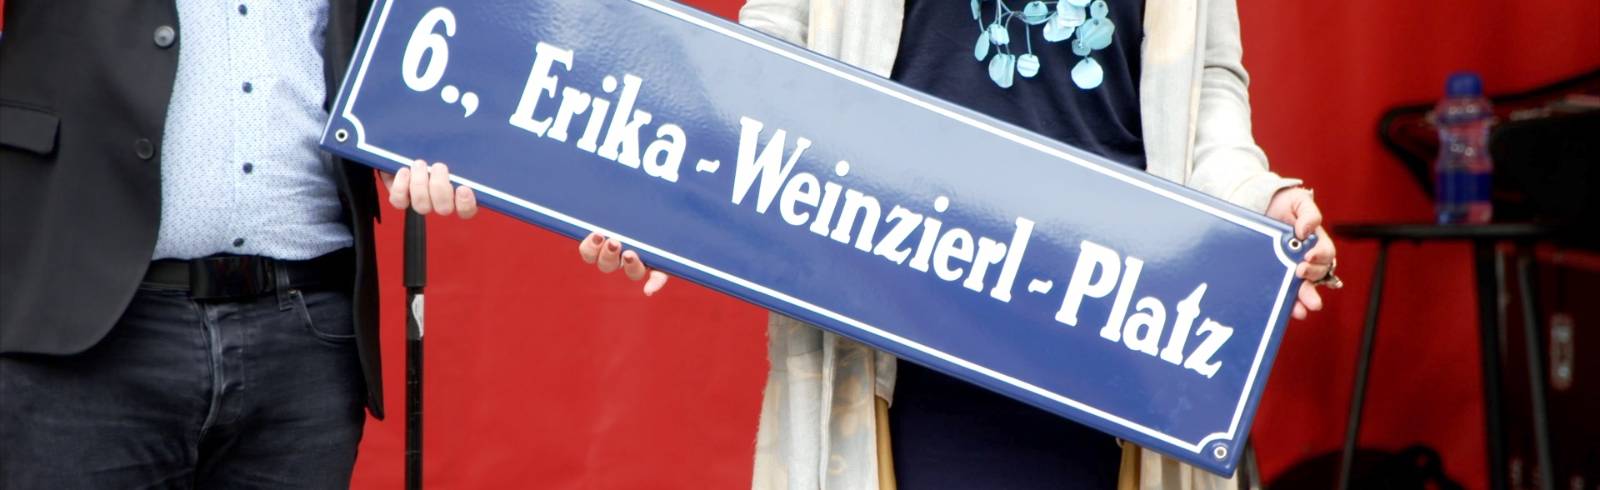 Erika Weinzierl-Platz in Mariahilf